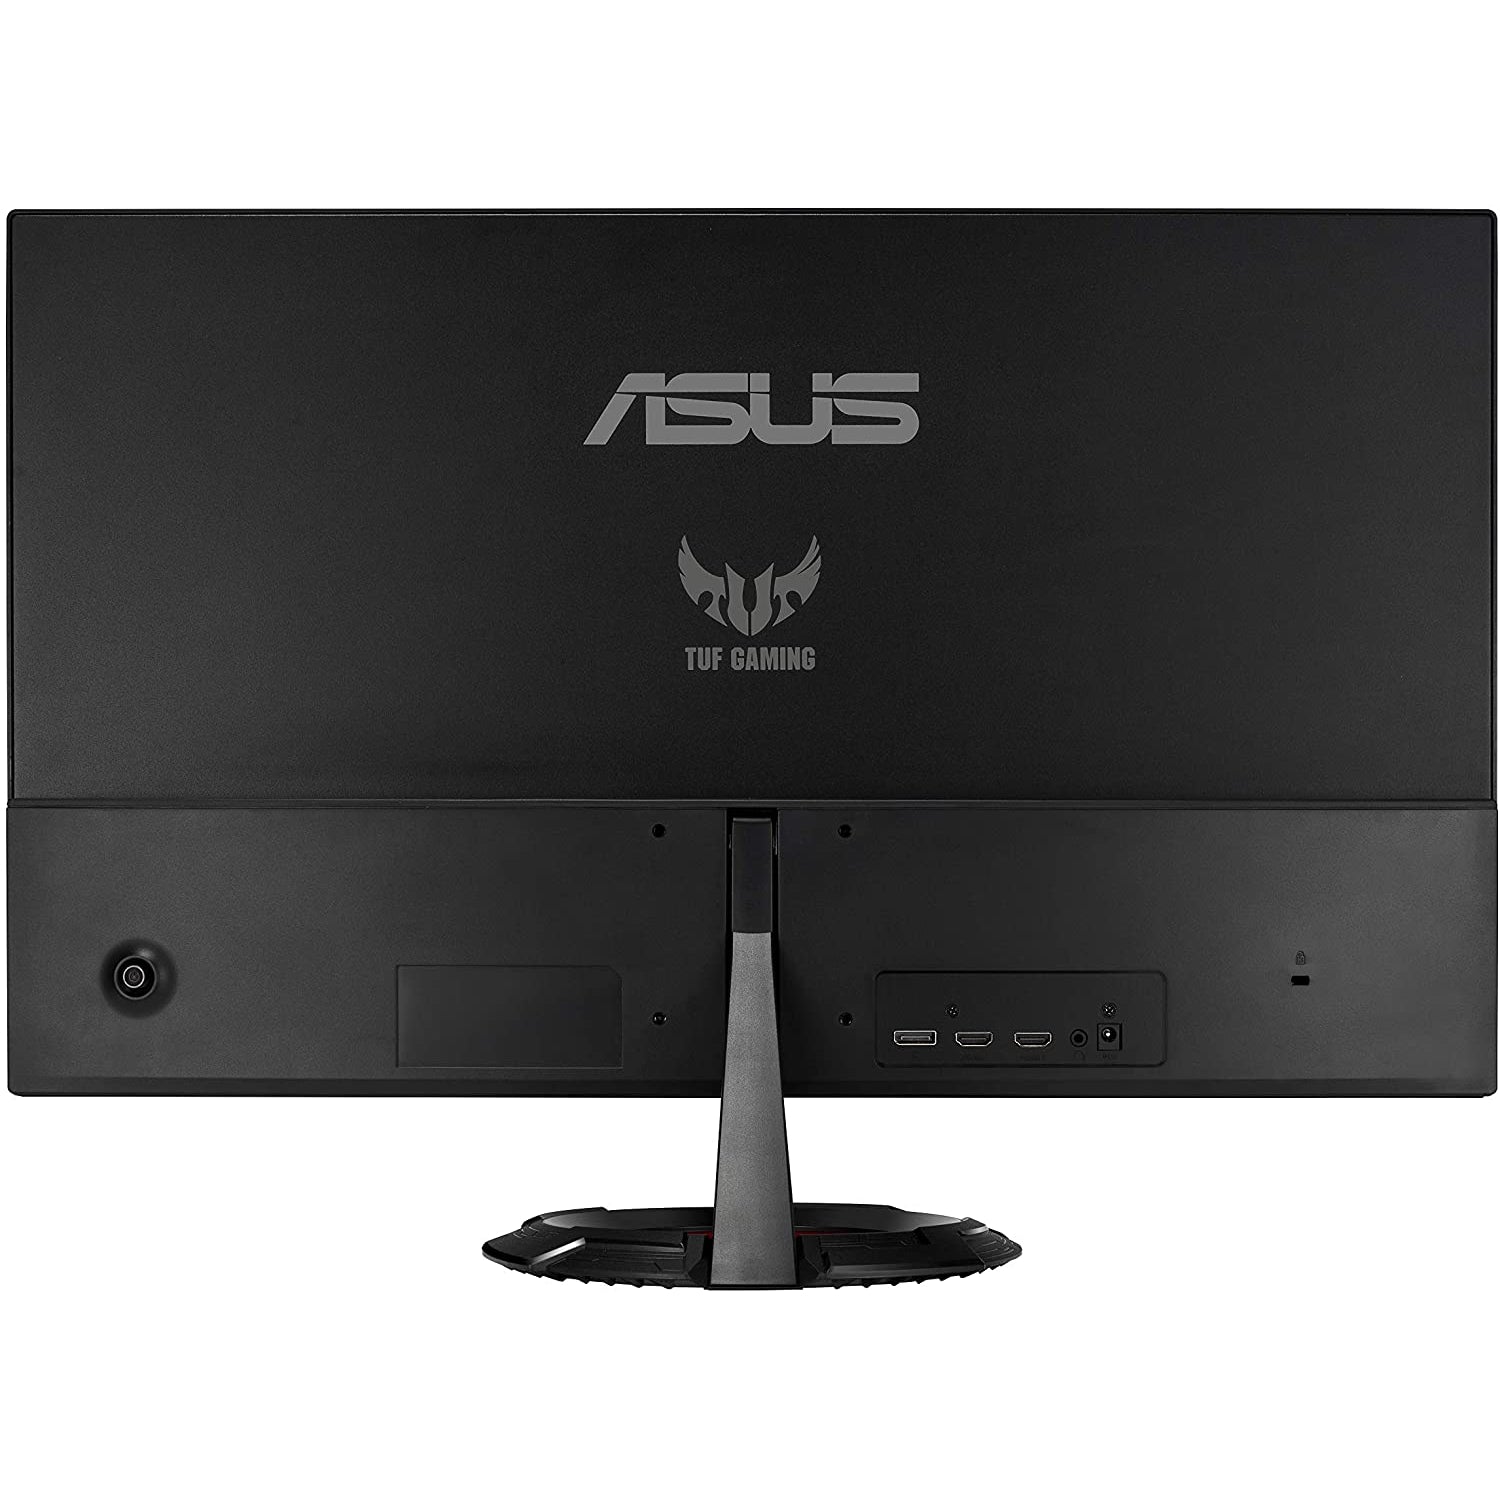 Asus VG279Q1R 27" Full HD IPS FreeSync 144Hz Gaming Monitor - Black